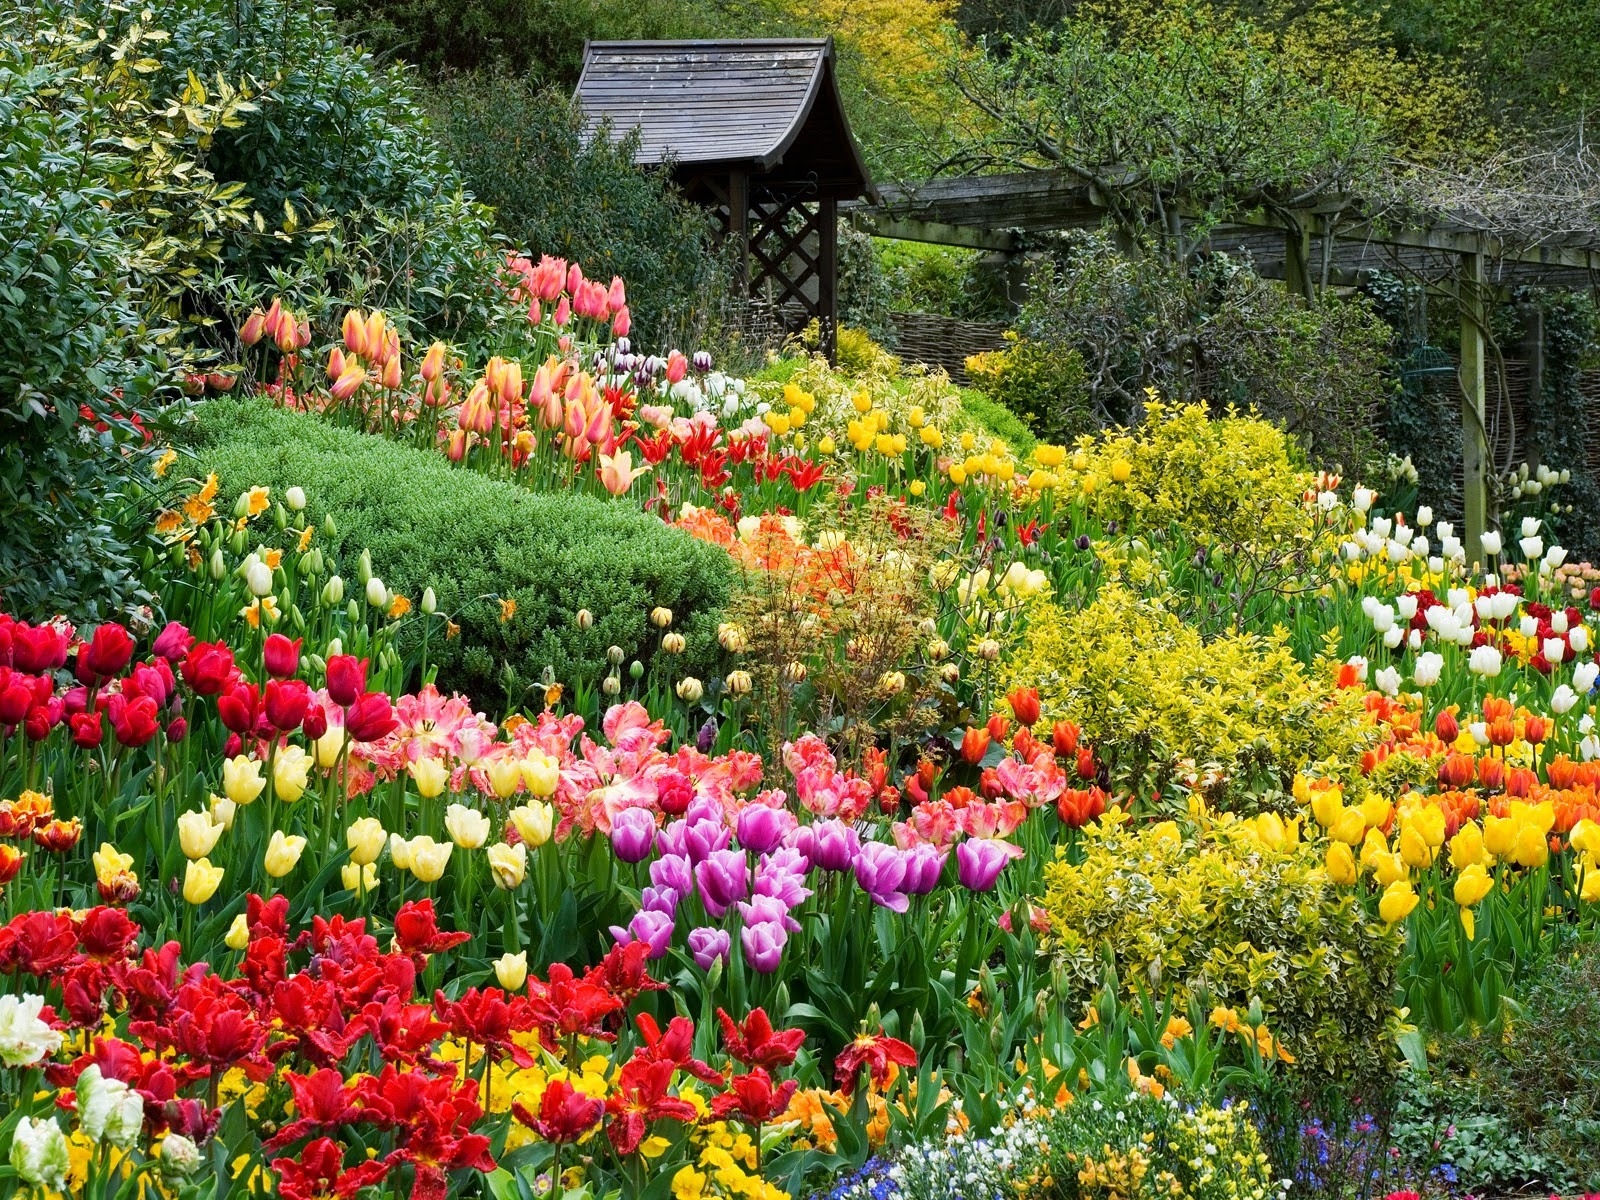 Vườn hoa Đà Lạt với những bông hoa xinh đẹp và đa dạng sẽ mang đến cho bạn những kỷ niệm đáng nhớ. Từ hoa hướng dương sáng rực đến hoa tulip rực rỡ, bạn sẽ có được những bức ảnh nghệ thuật đầy màu sắc và đẹp mắt.